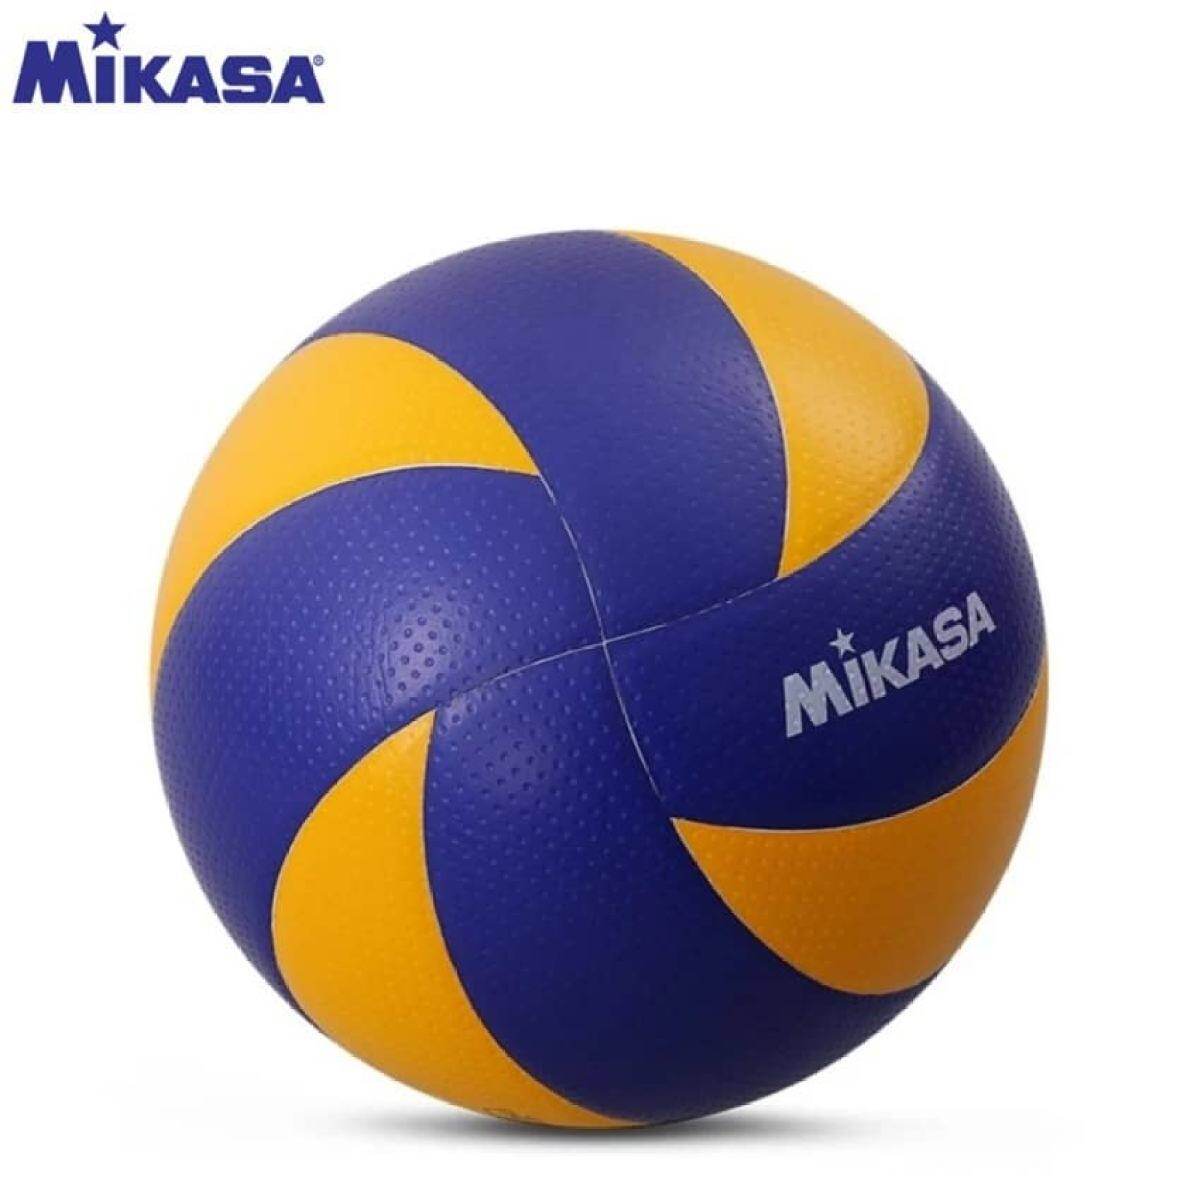 Какой мяч используется в волейболе. Волейбольный мяч Микаса. Развертка волейбольного мяча Mikasa. Микаса MVA 300. Волейбольный мяч Mikasa вектор.